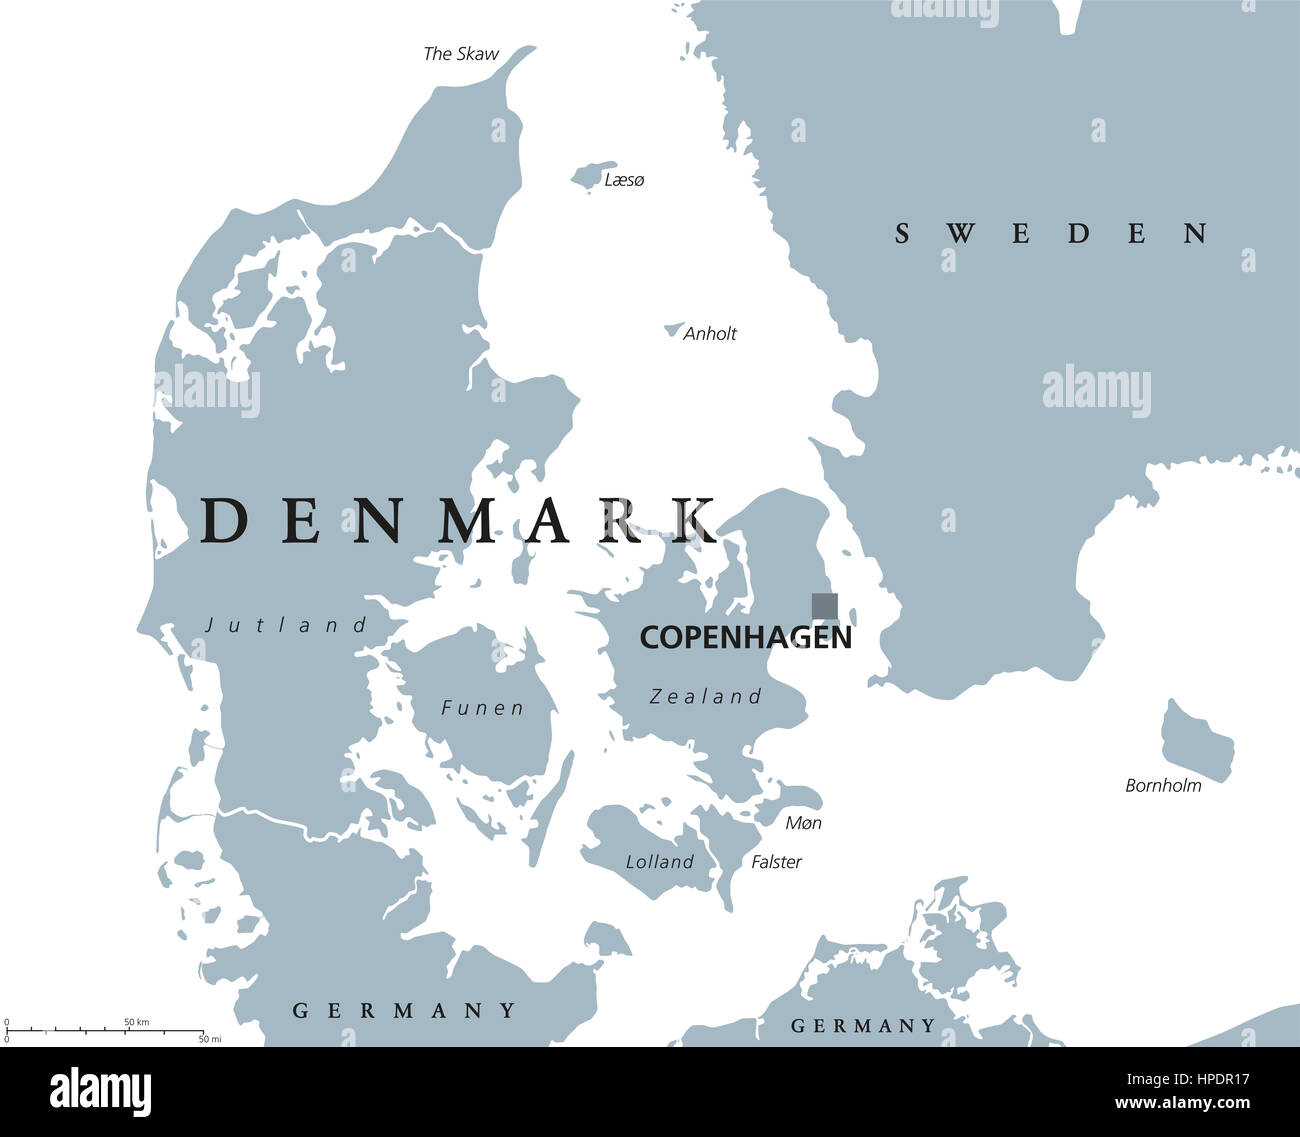 La Danimarca Mappa Politico Con Capitale Copenhagen E Paesi Vicini Regno Scandinavi E Dei Paesi Nordici In Europa Foto Stock Alamy